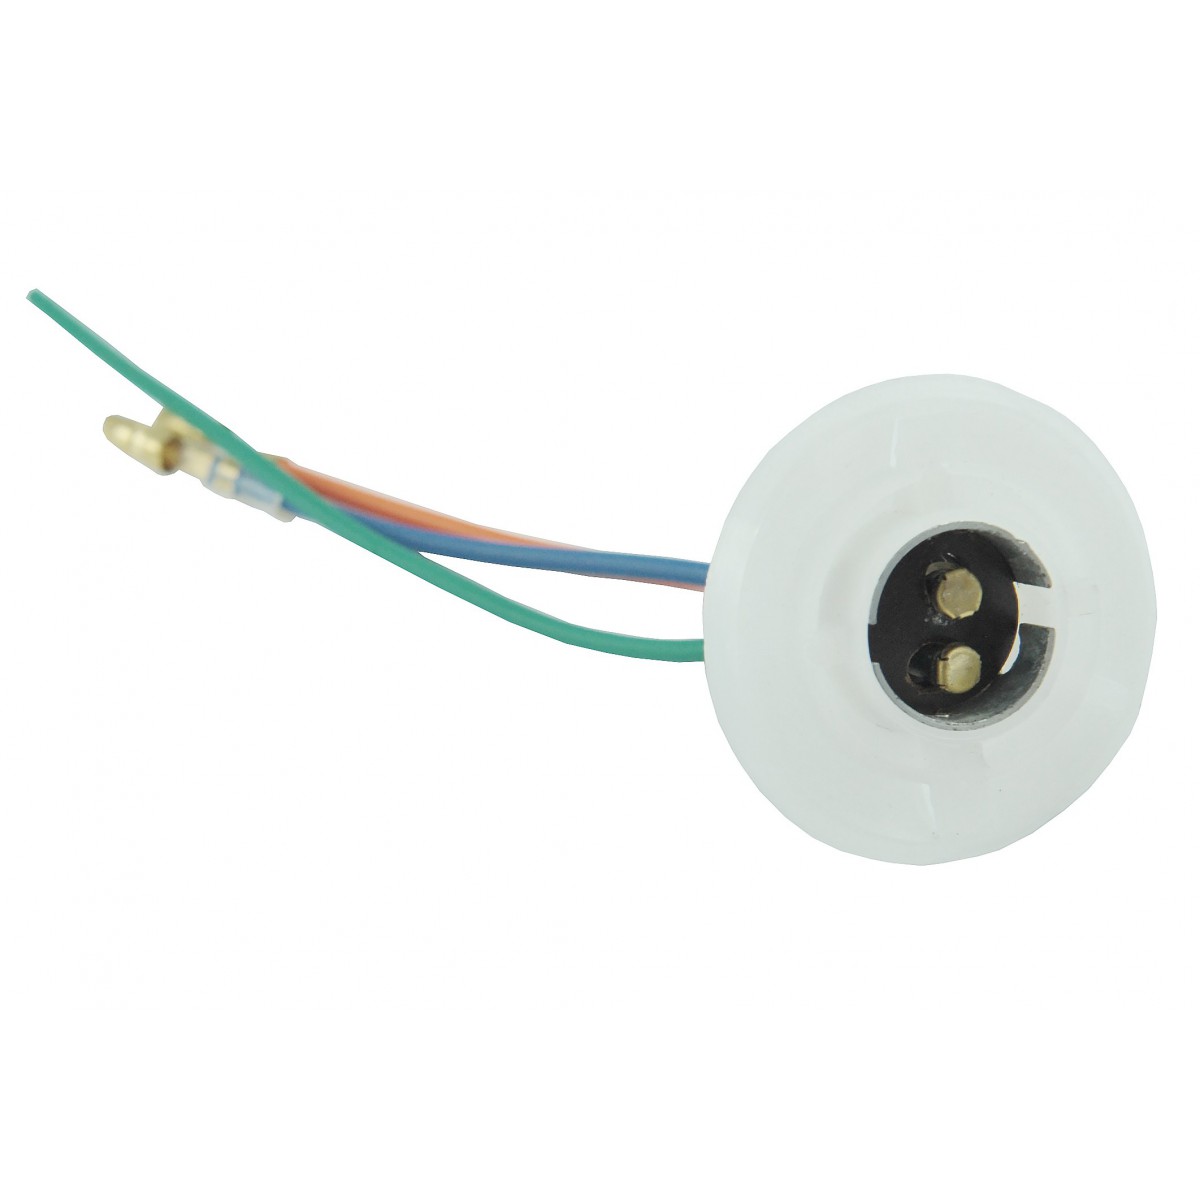 Bulb socket Kubota -two-filament bulb